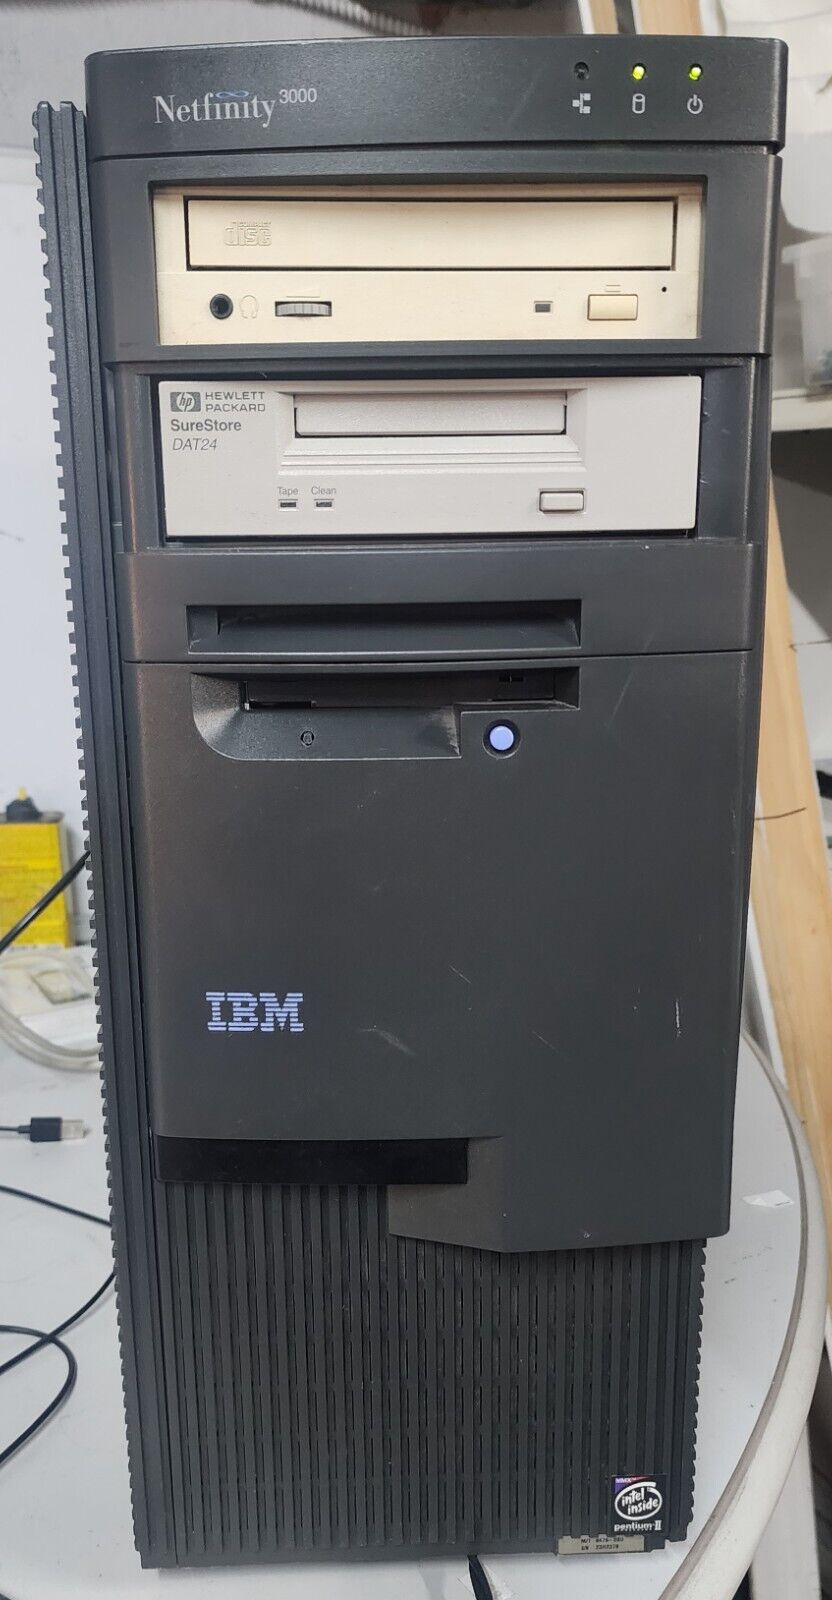 Vintage IBM Netfinity 3000 Server (Pentium II / 128MB / ca. 1998)